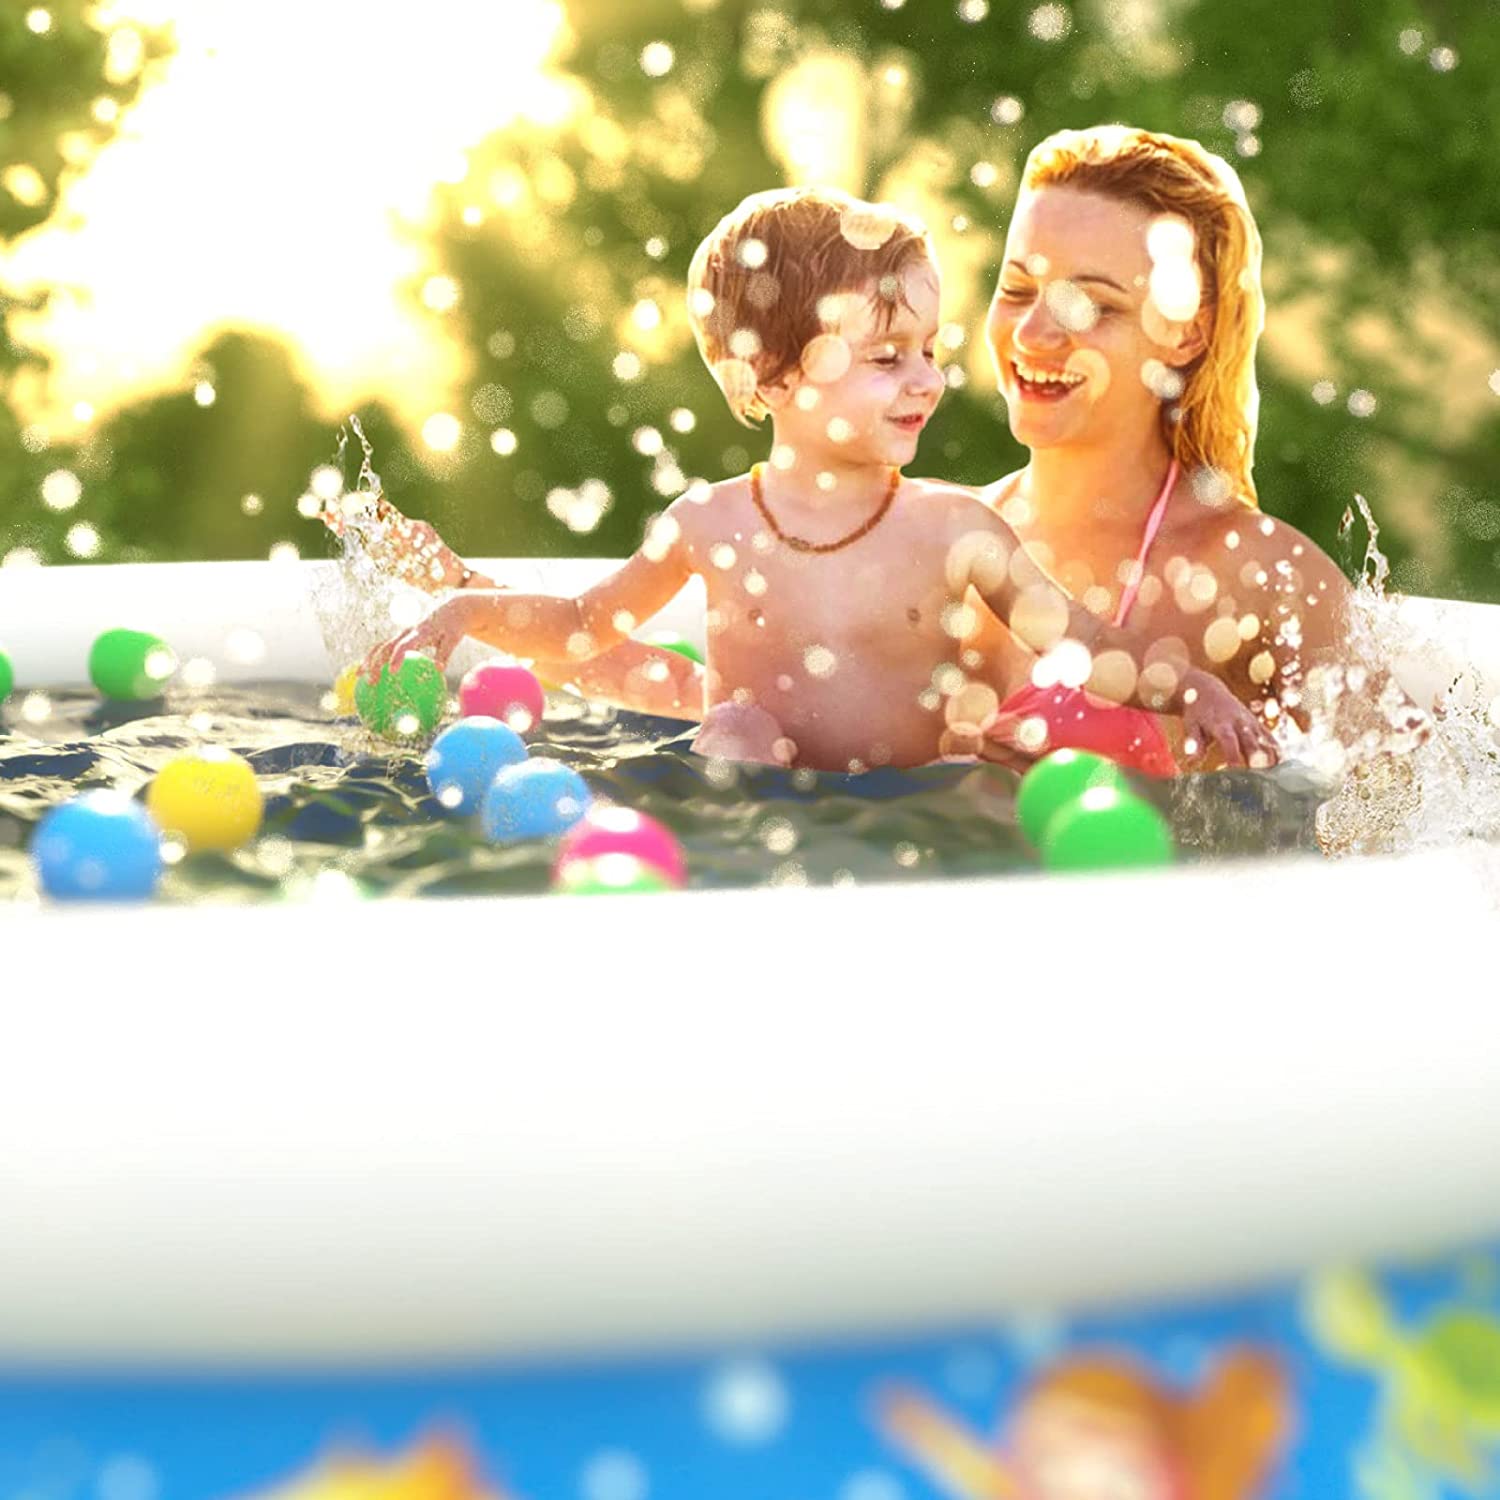 Inflatable Kids Kiddie Pool - Jasonwell